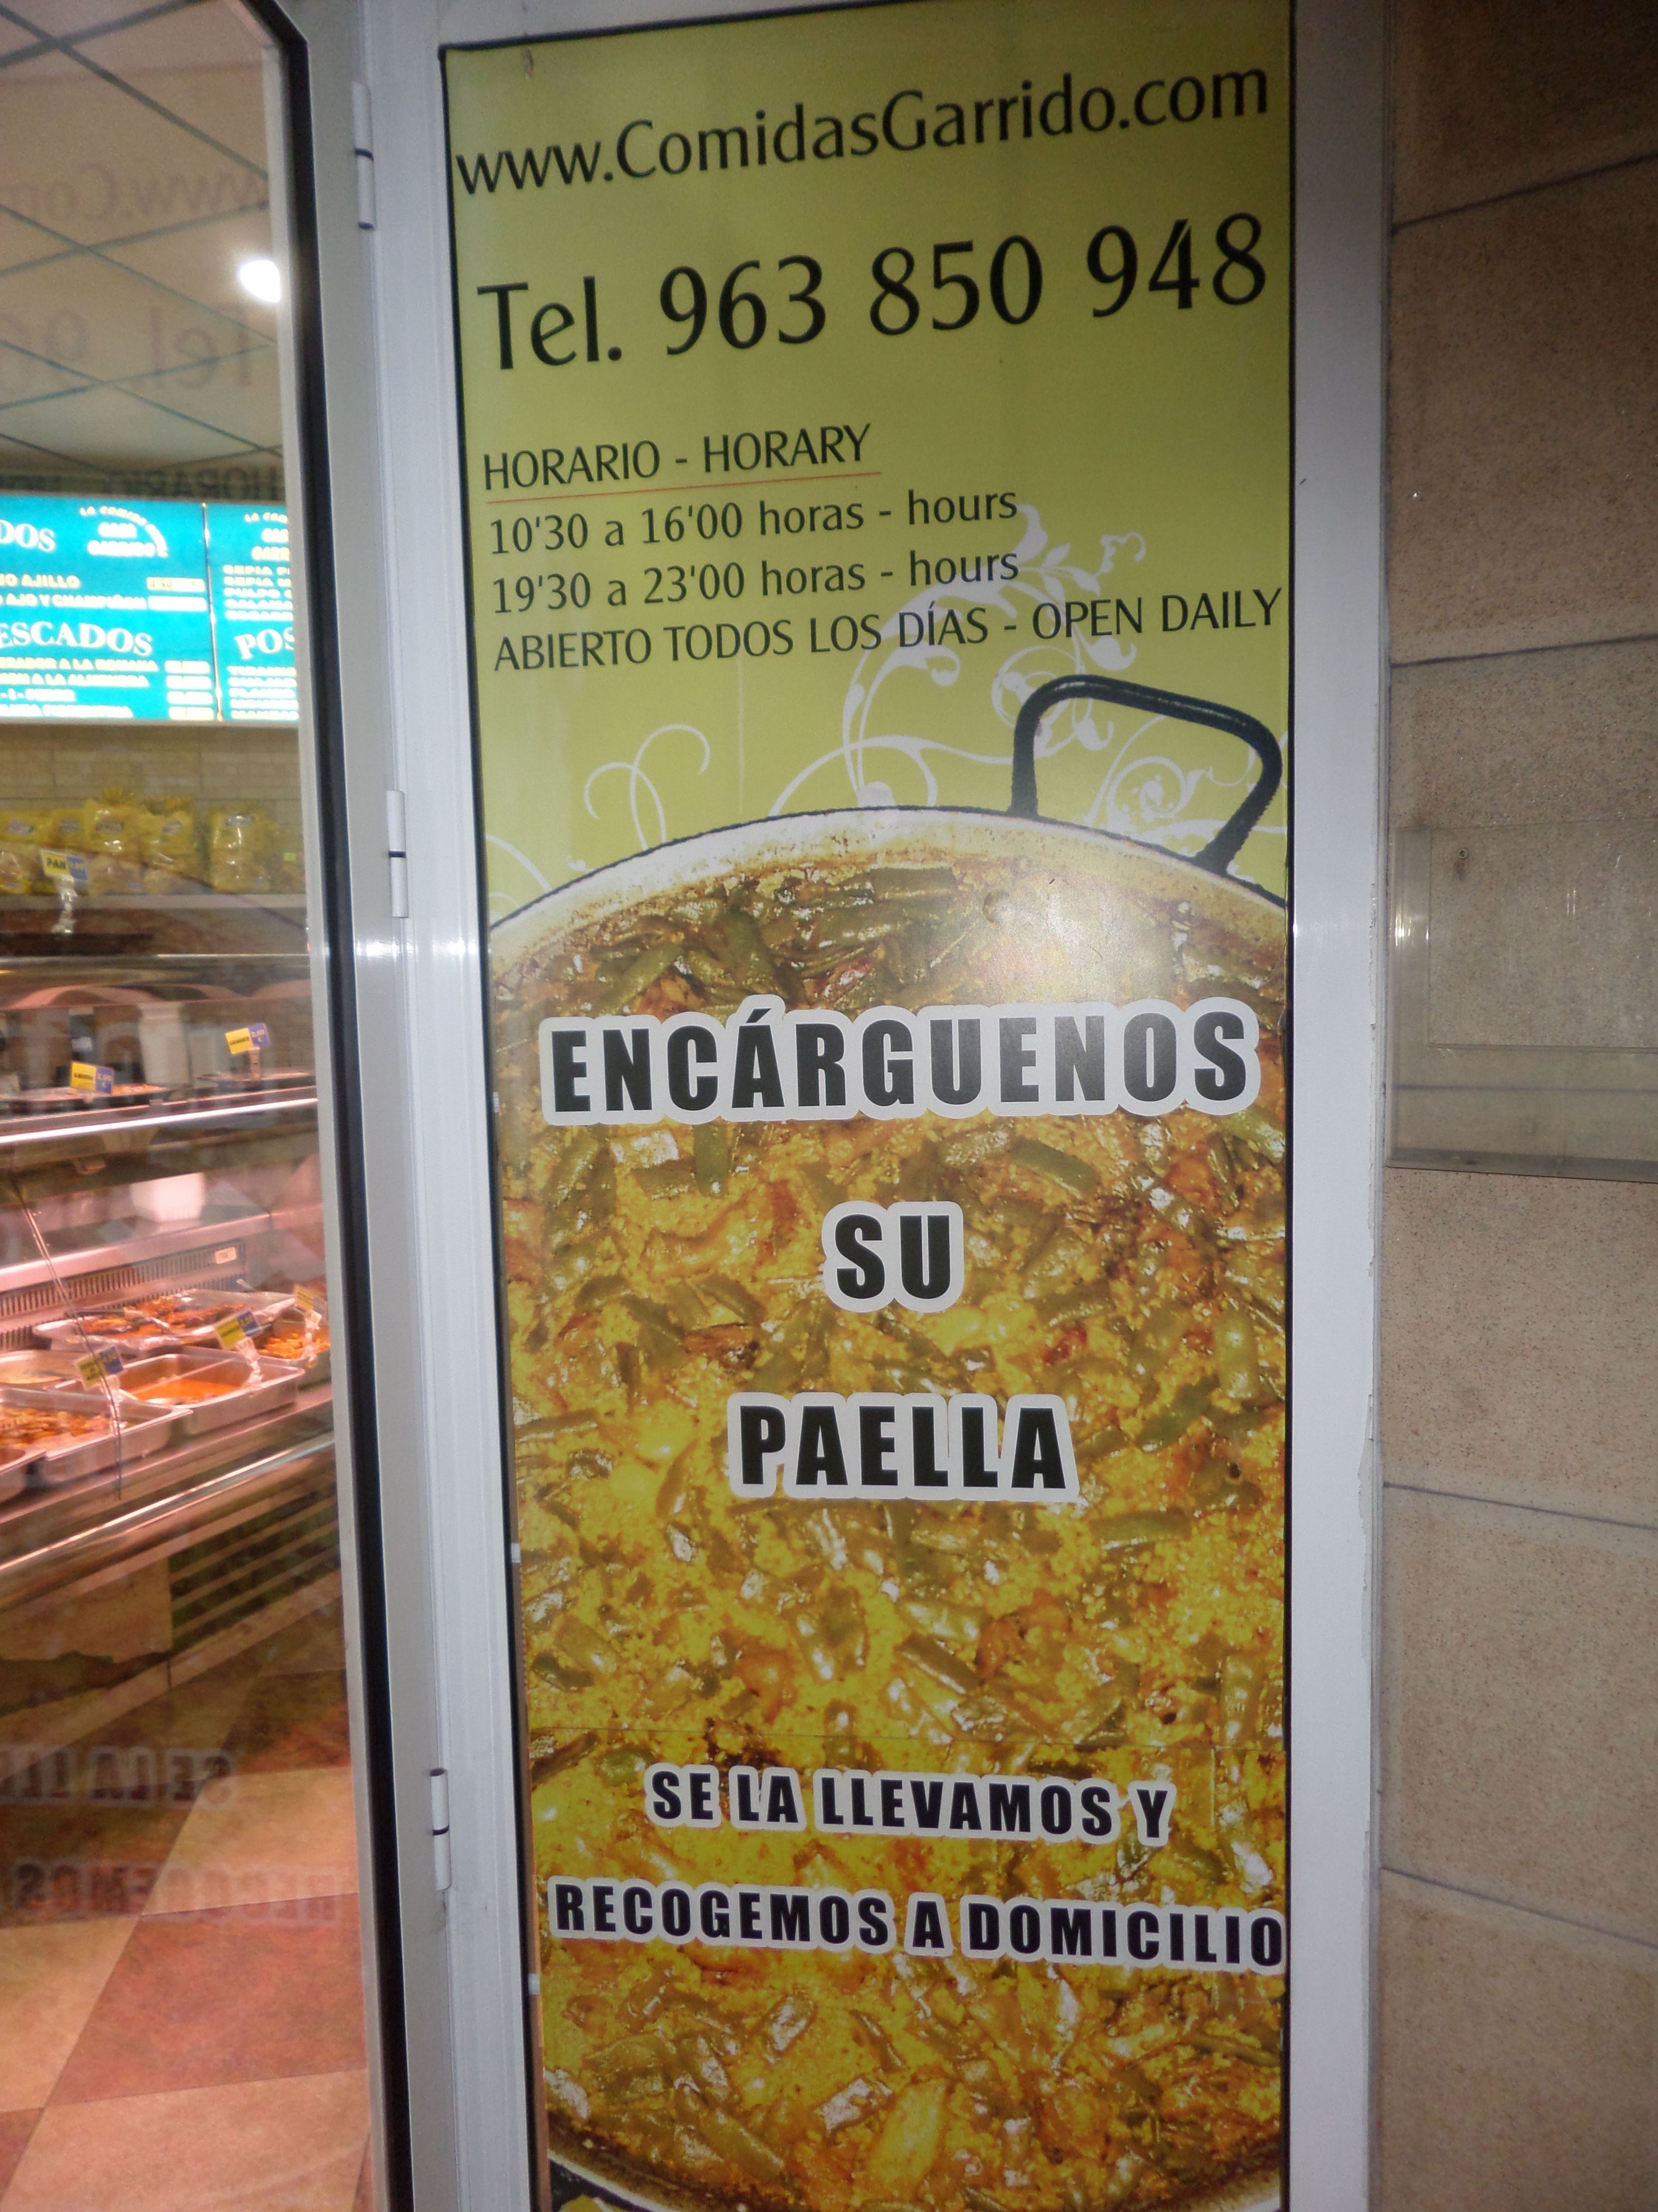 Servicio por encargo de paellas en Valencia